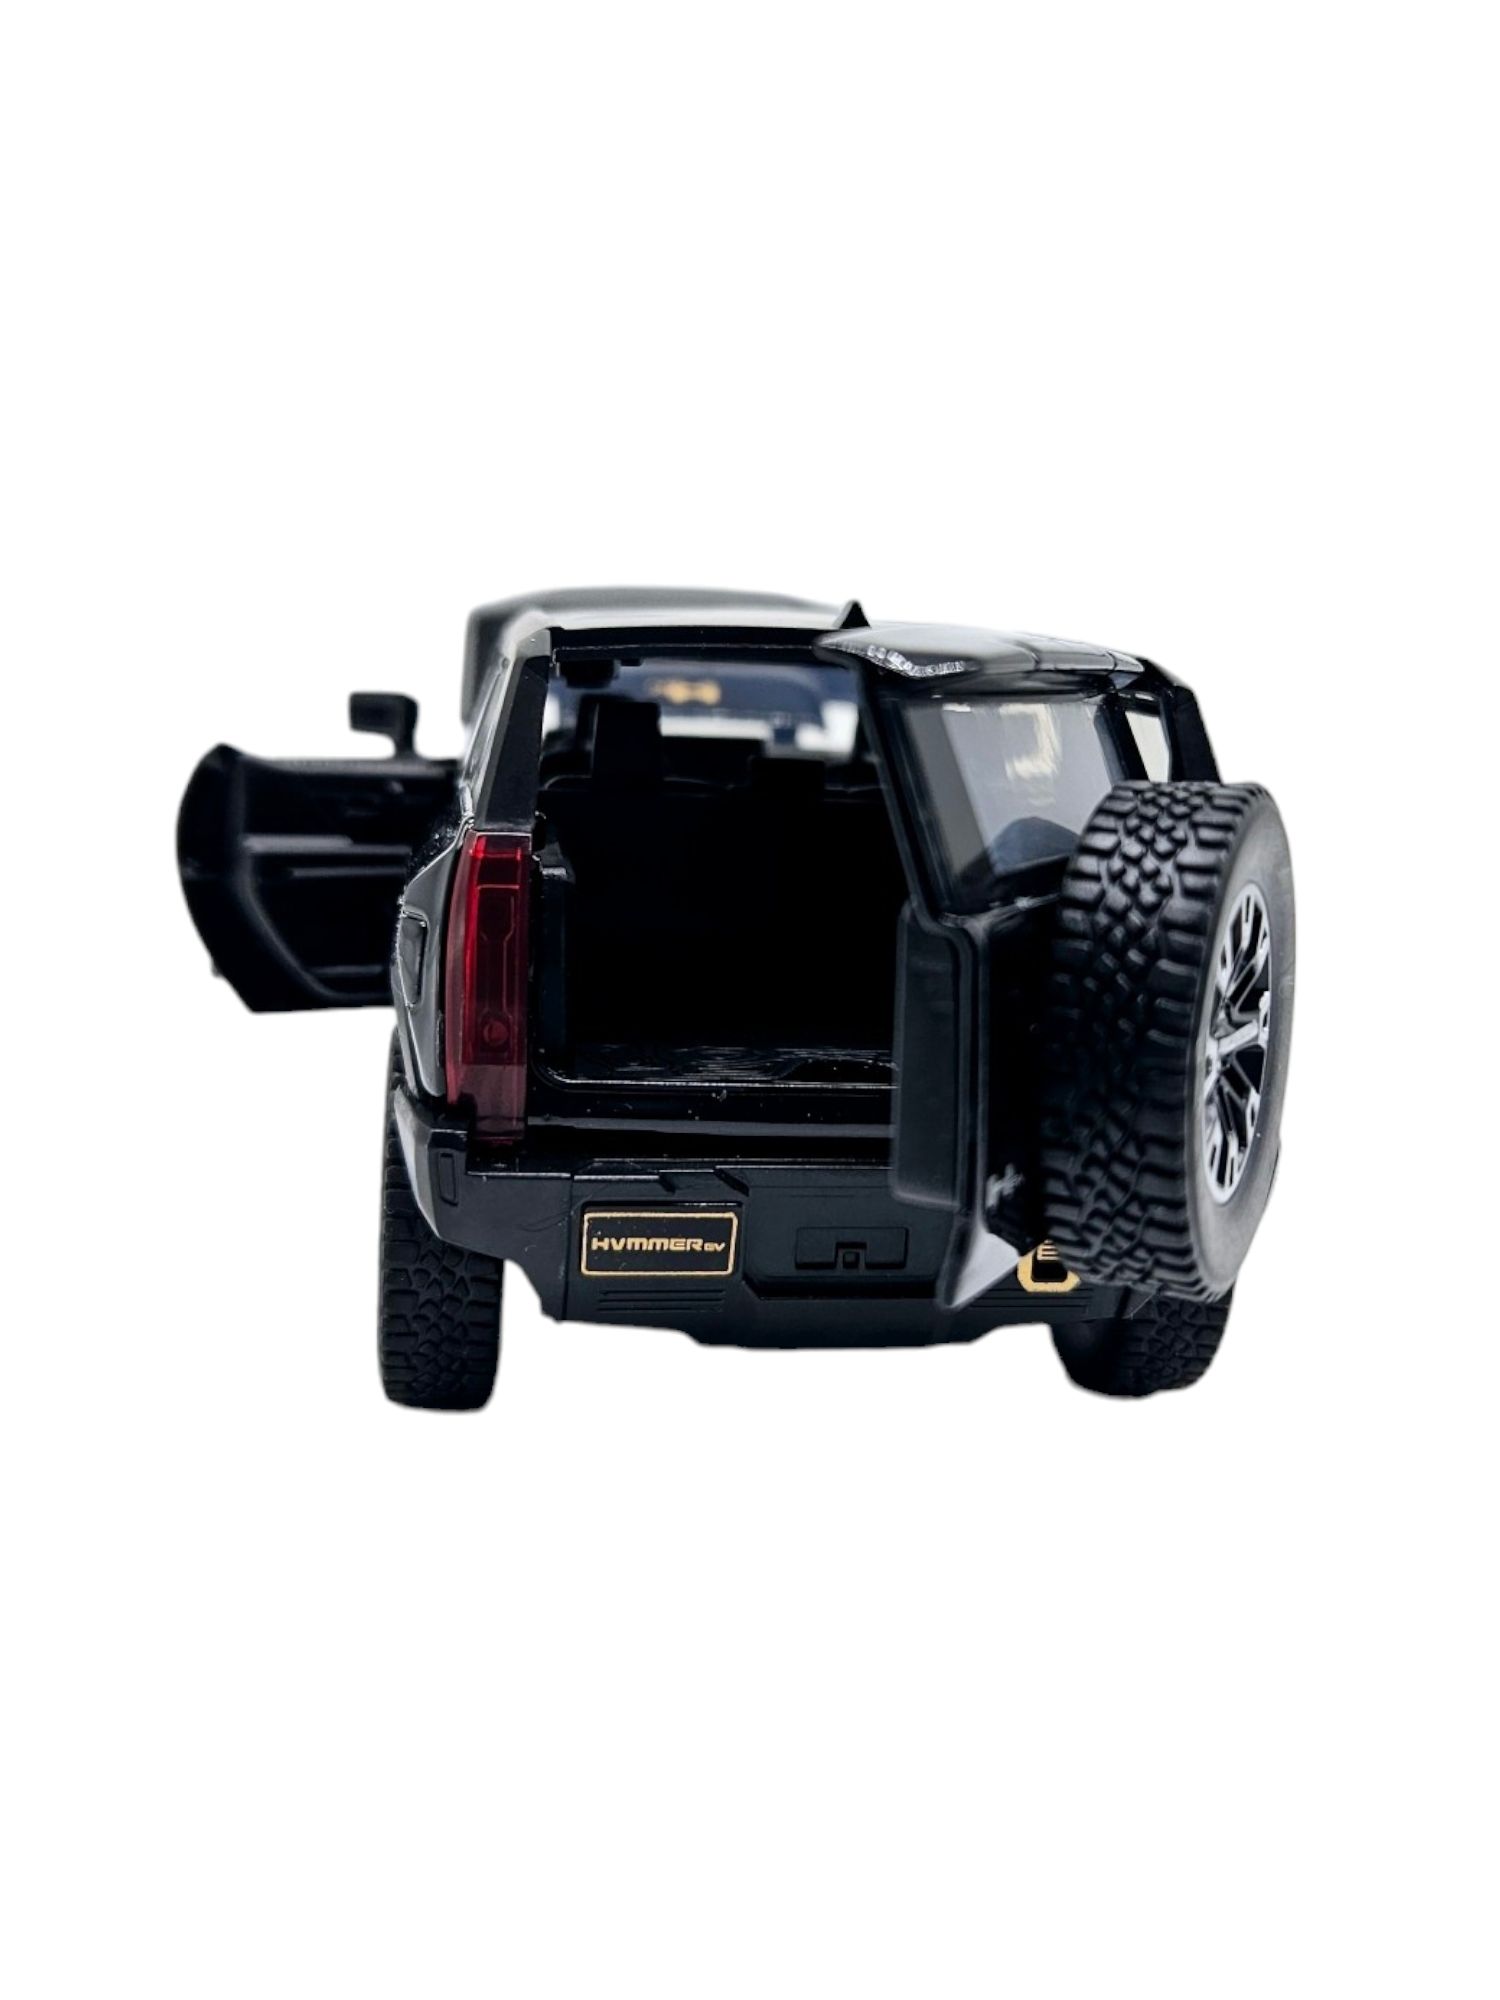 Masina metalica Hummer EV cu figurina,Sunete si lumini 16cm, Negru